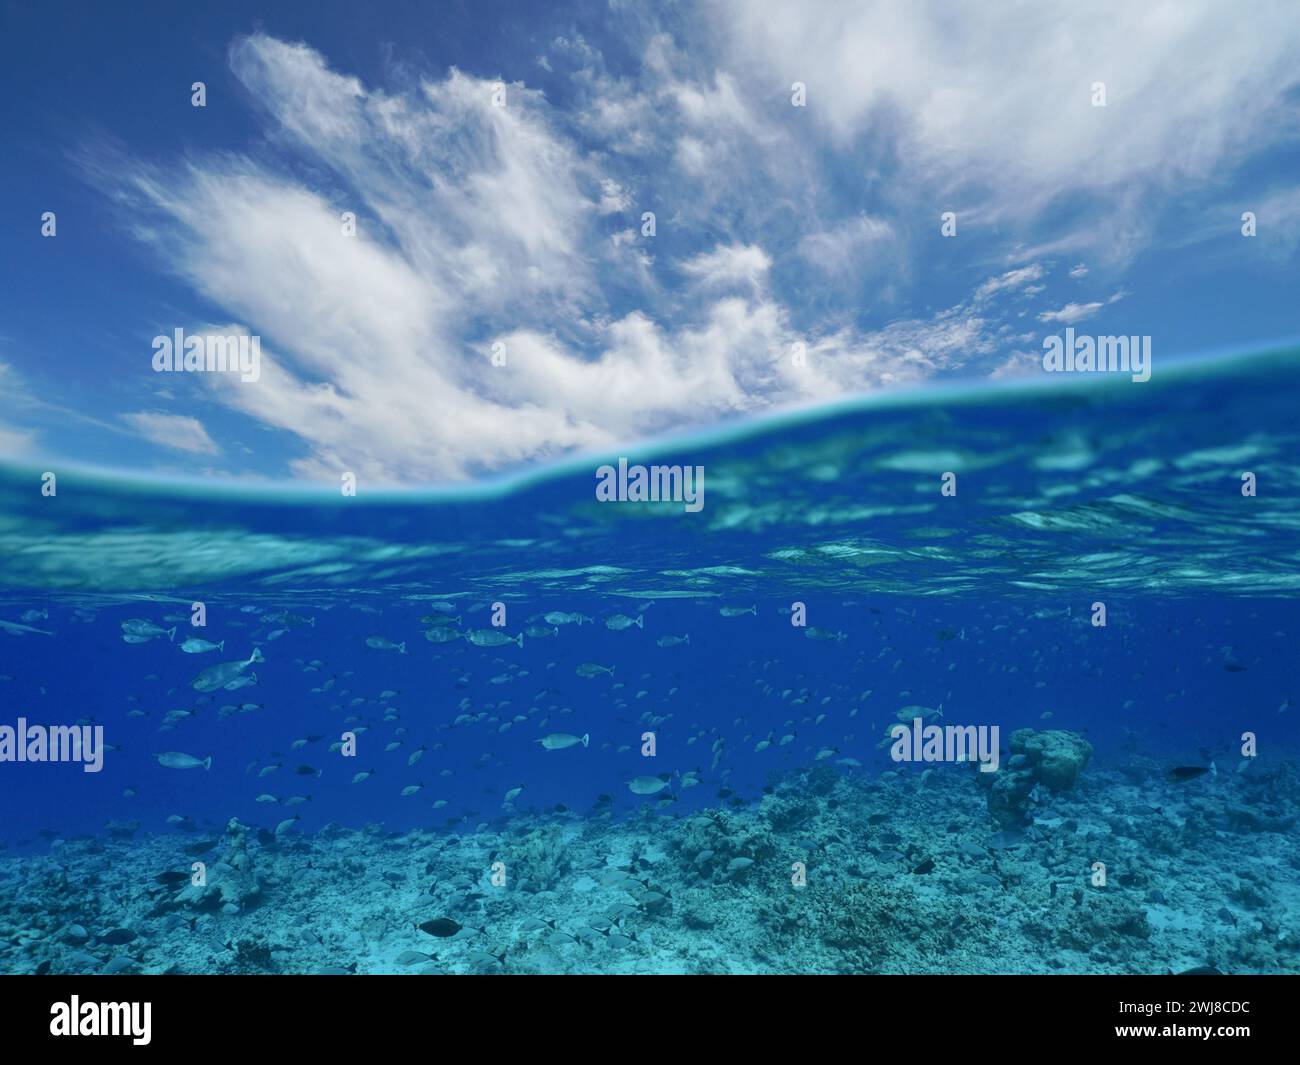 Océan paysage marin, ciel bleu avec nuages et récif avec école de poissons sous l'eau, vue divisée à moitié au-dessus et sous l'eau, scène naturelle, Pacifique sud Banque D'Images